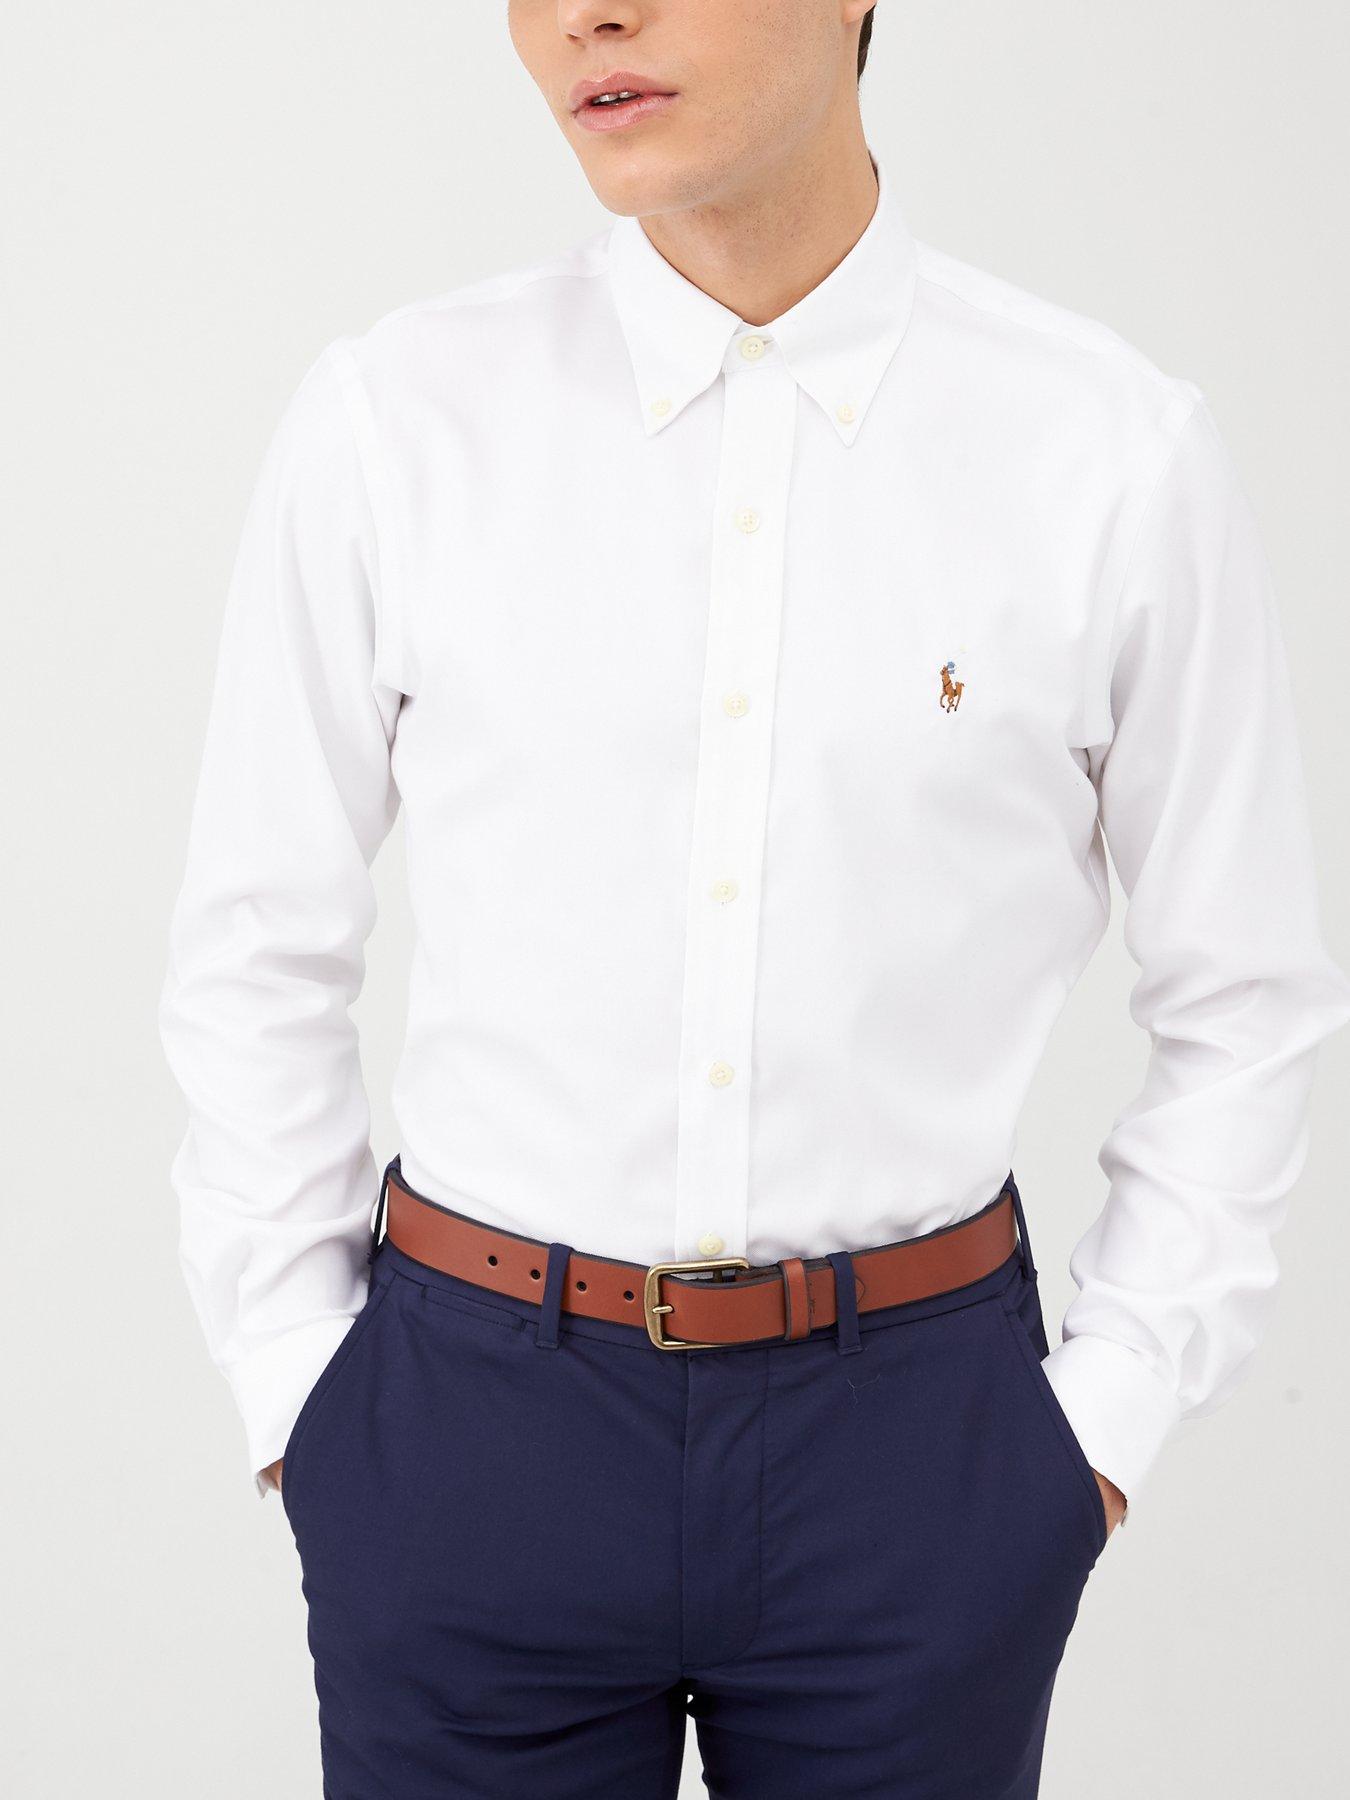 white polo oxford shirt